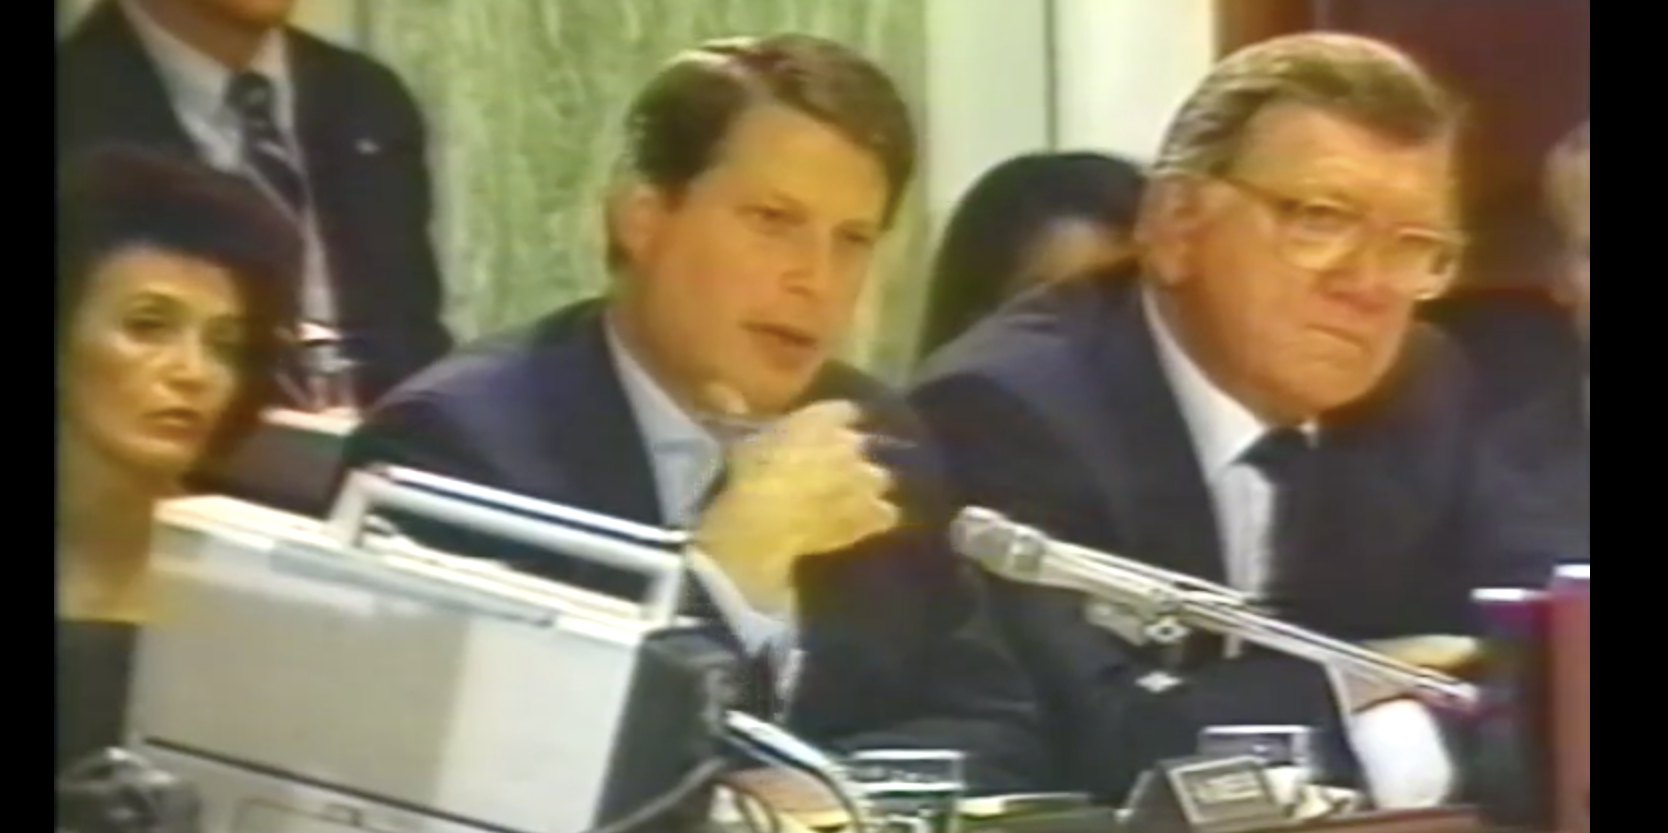 Al Gore PMRC hearing